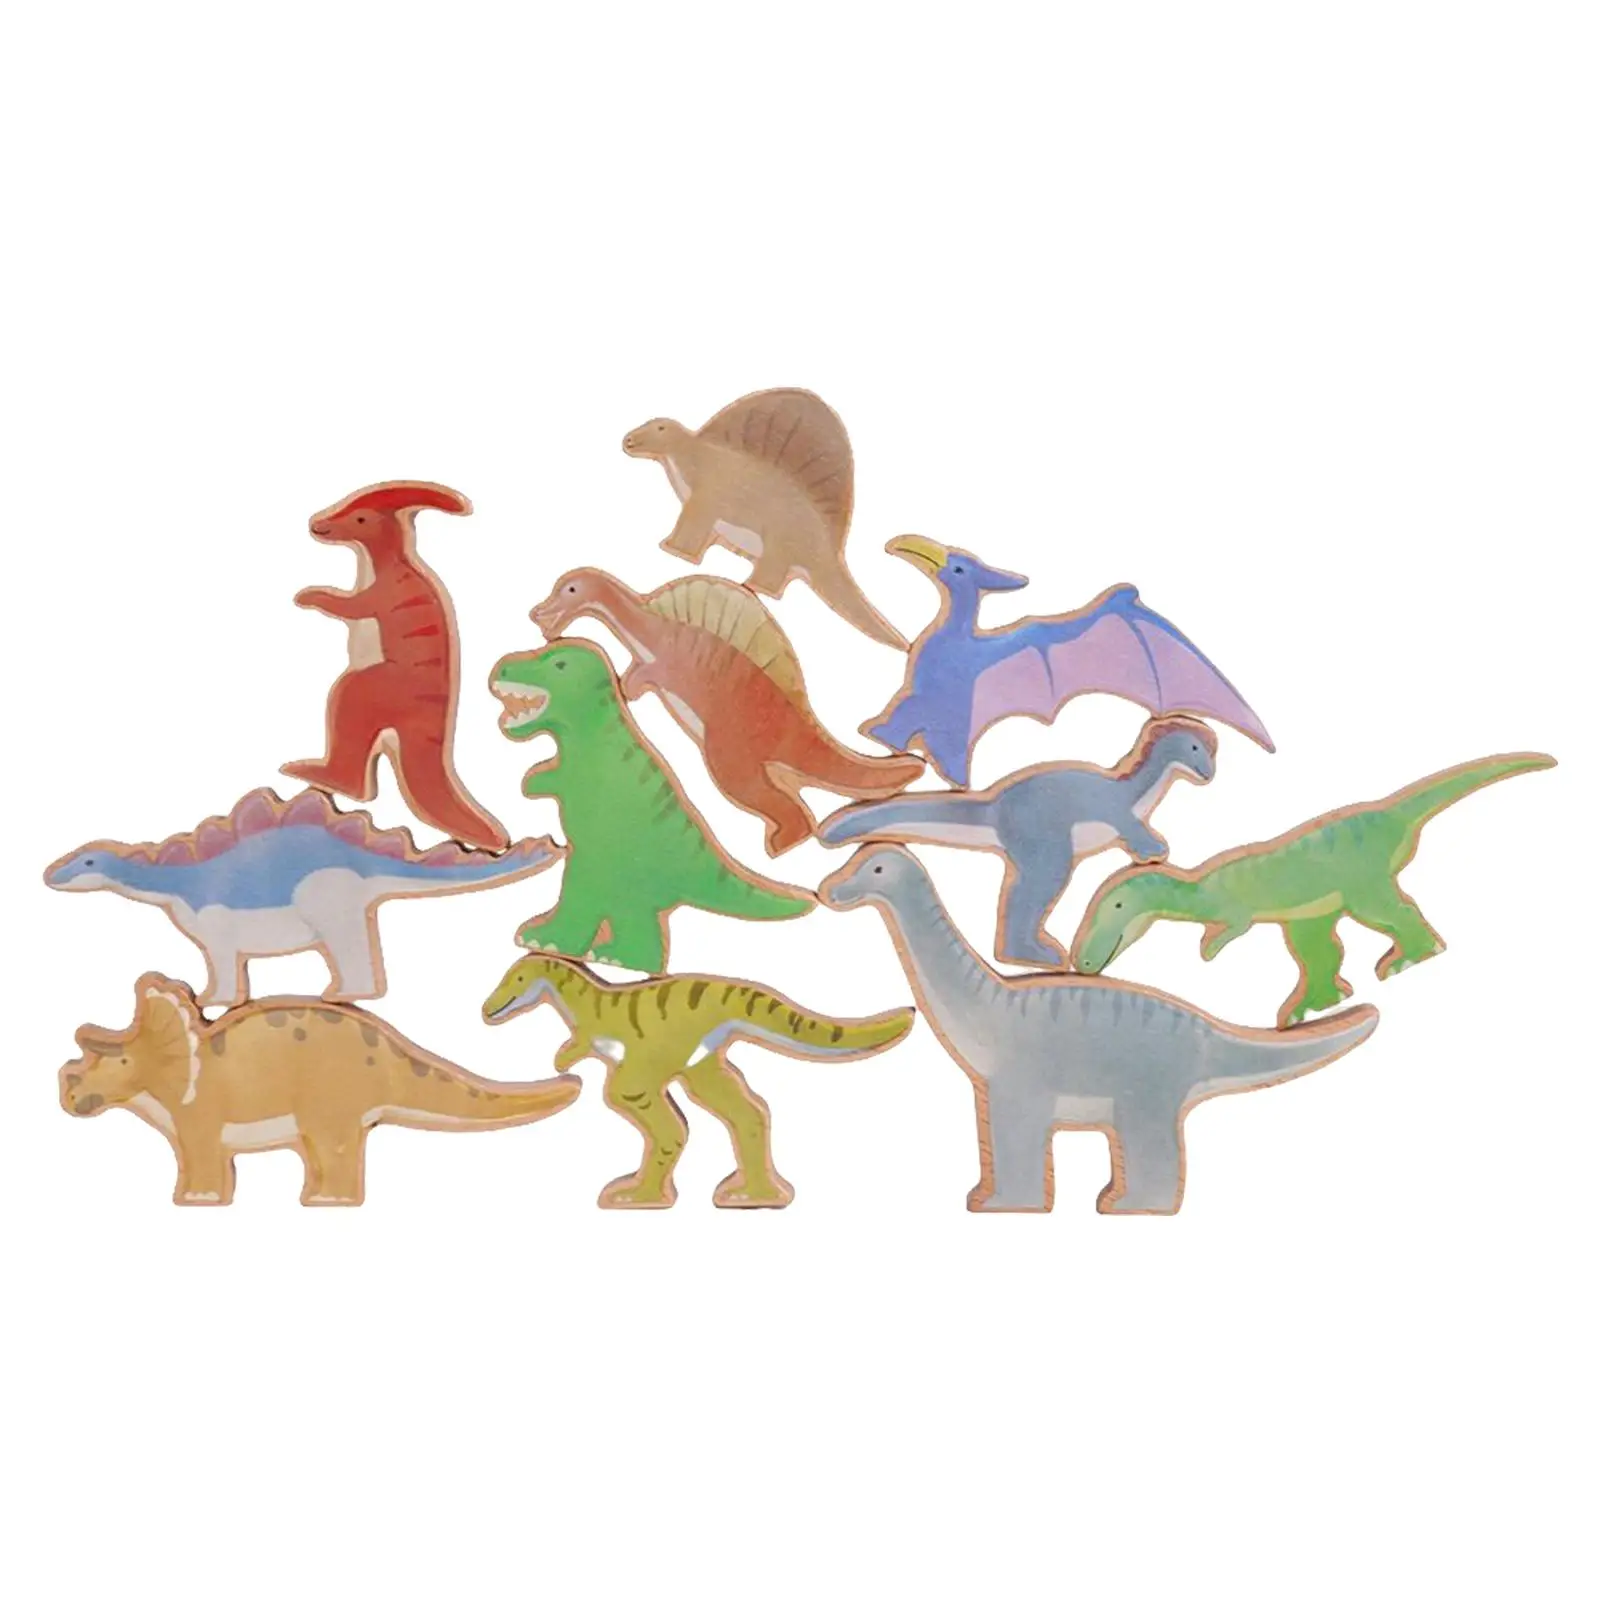 Montessori Wooden Blocks Dinosaur Toys Learning Toys Educational Toys Brain Development for Girls Boys Children Toddler Gifts